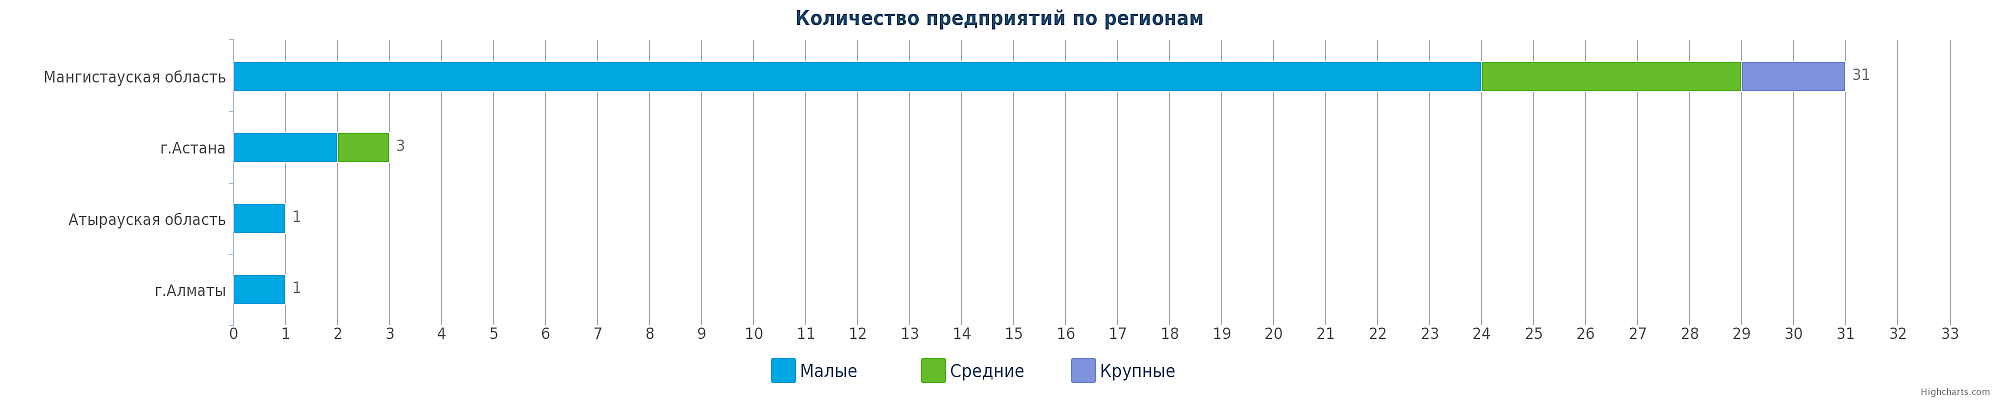 Количество компаний, занимающихся автомобильными грузоперевозками в Казахстане